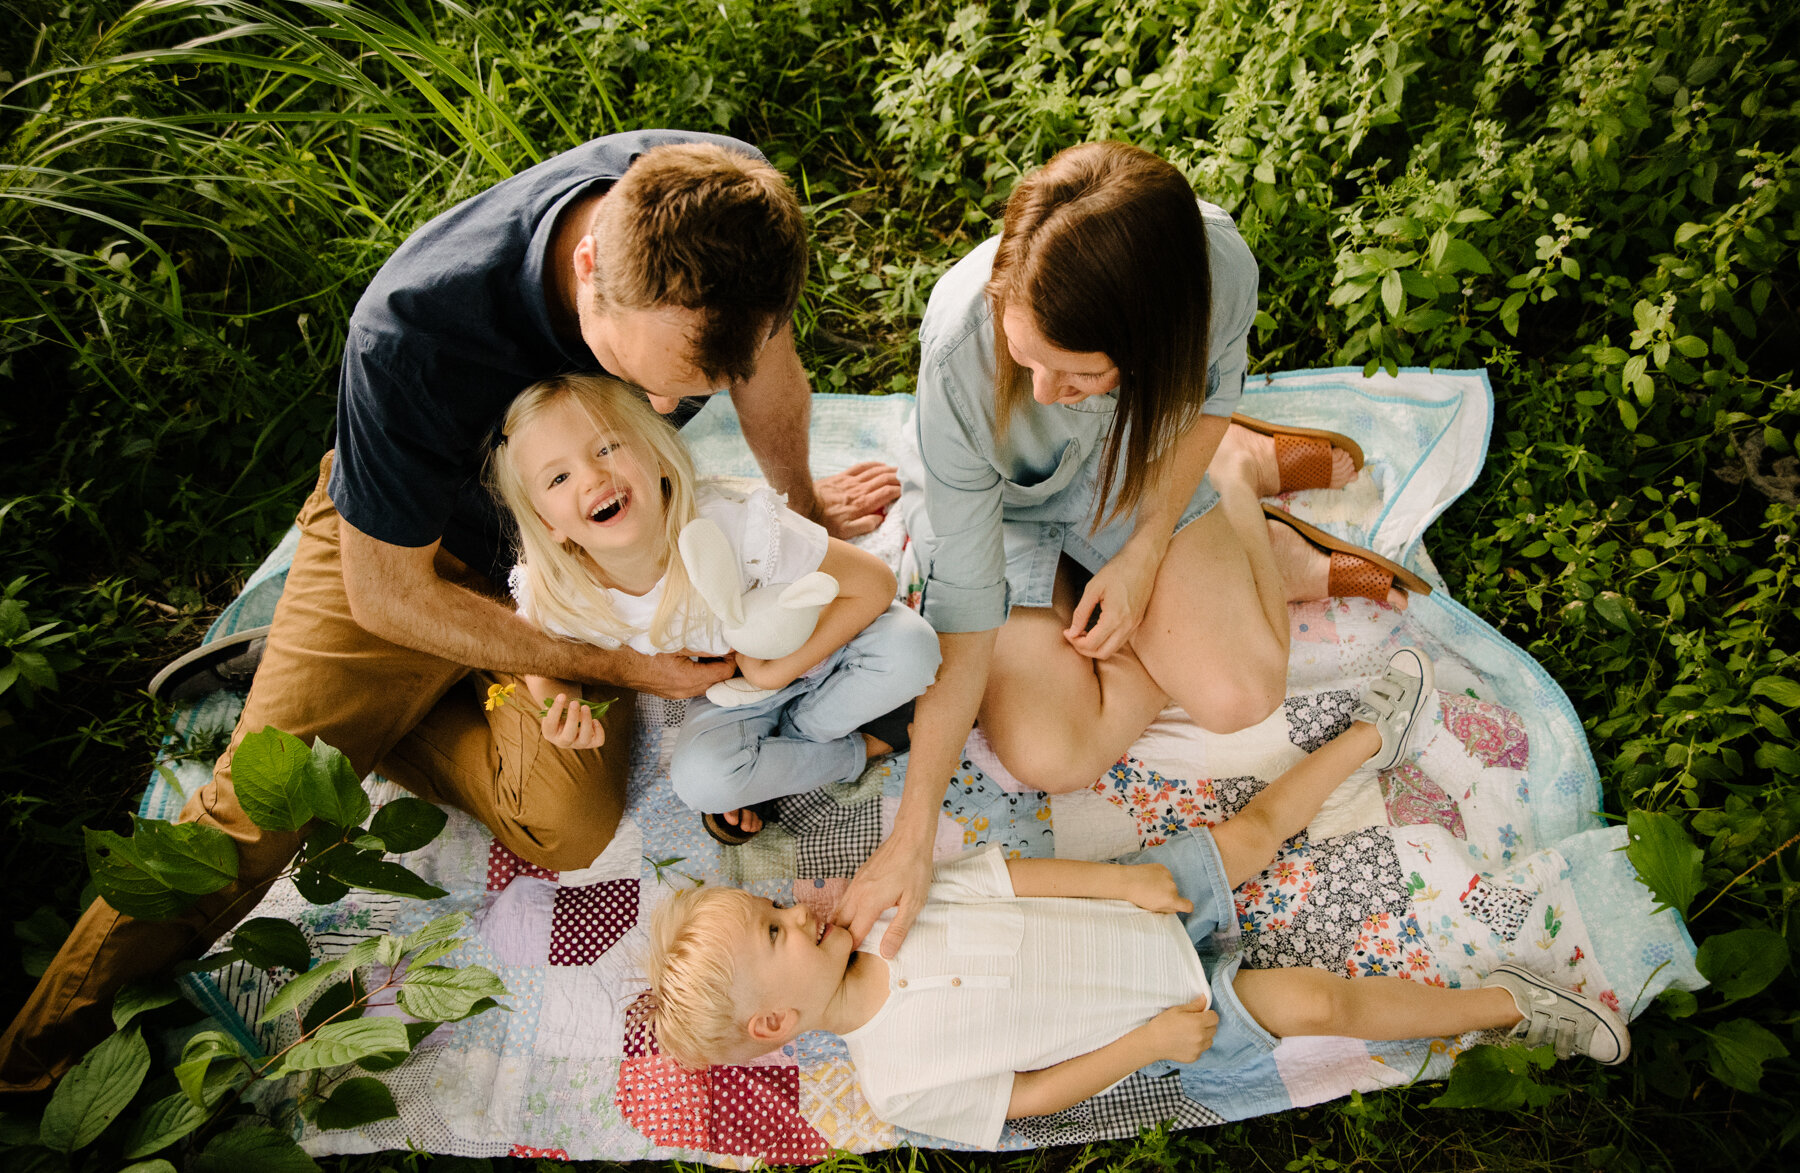 066photo-famille-qui-s'amuse-sur-une-couverture-dans-l-herbe-photographe-de-famille-a-montreal-marianne-charland-316.jpg